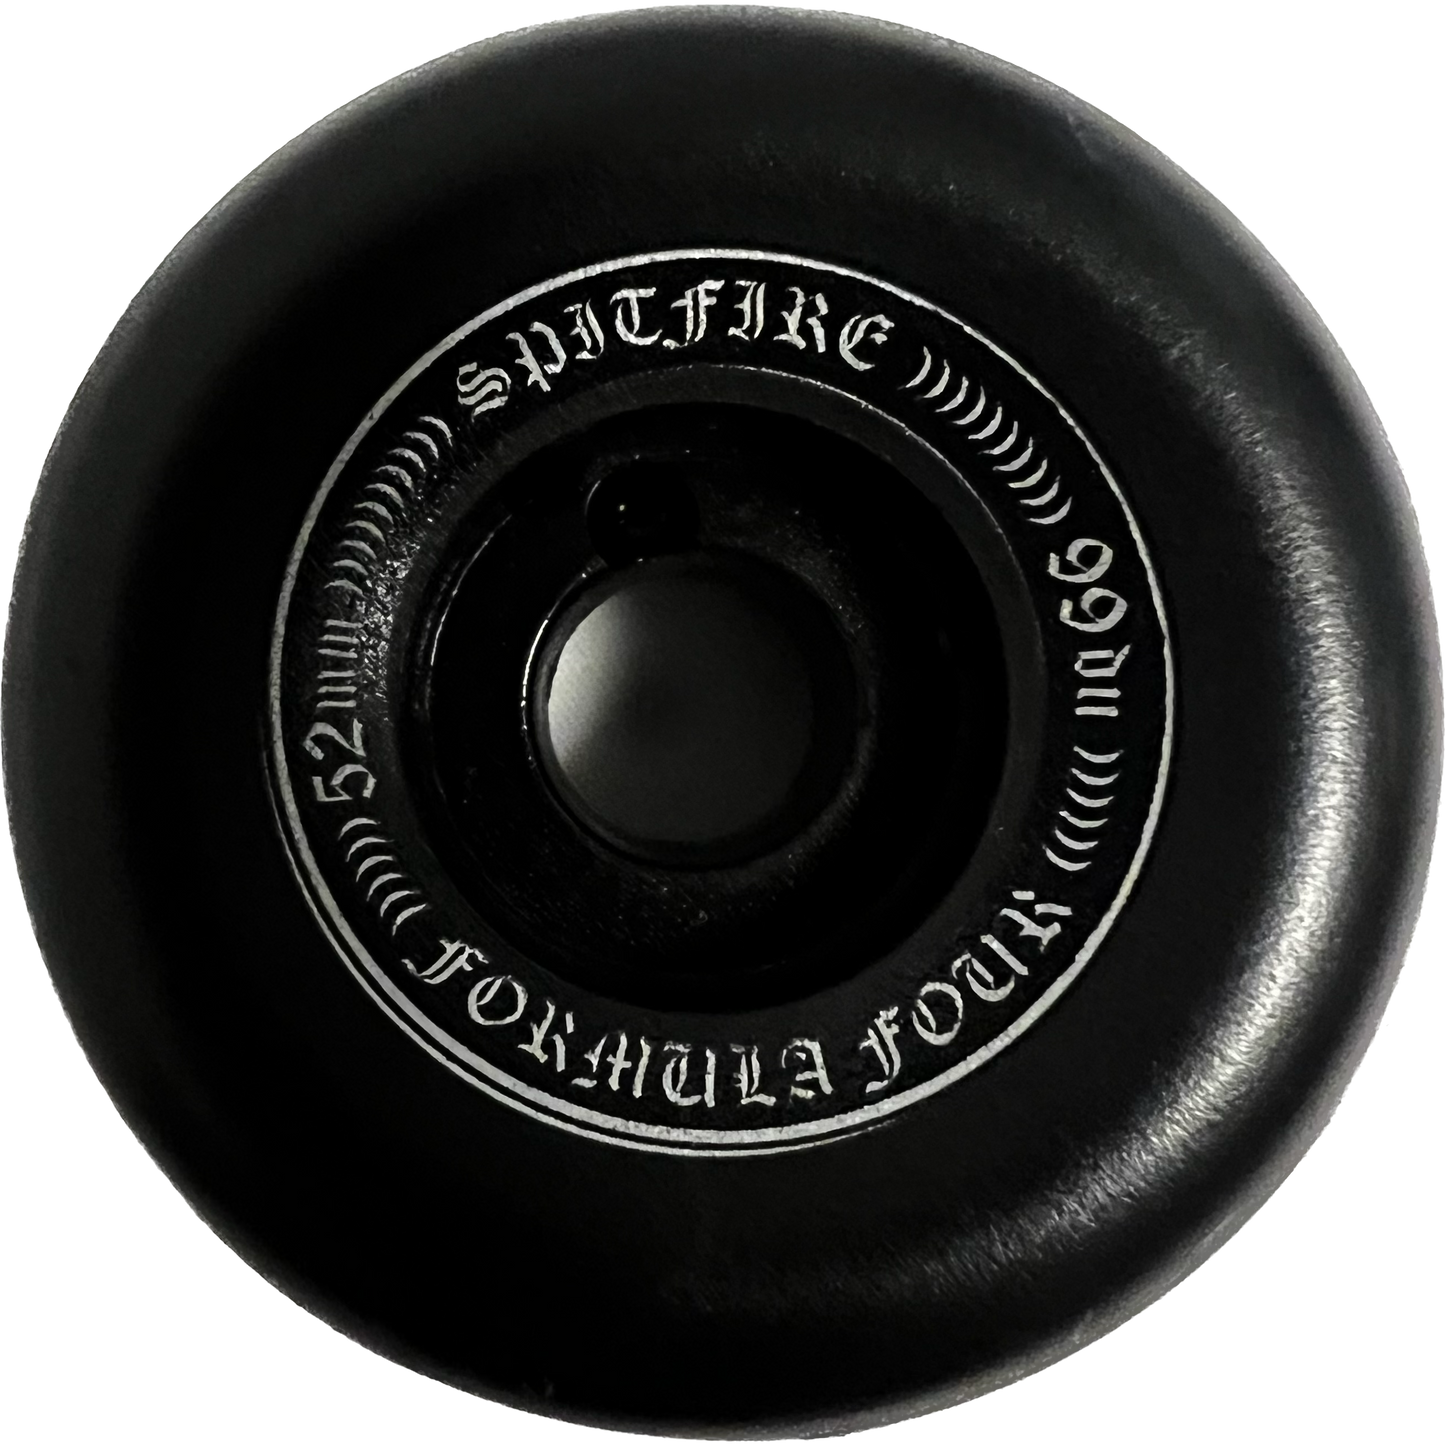 Spitfire Formula Four OG Classic 52mm 99d Set Of 4 Skateboard Wheels Black